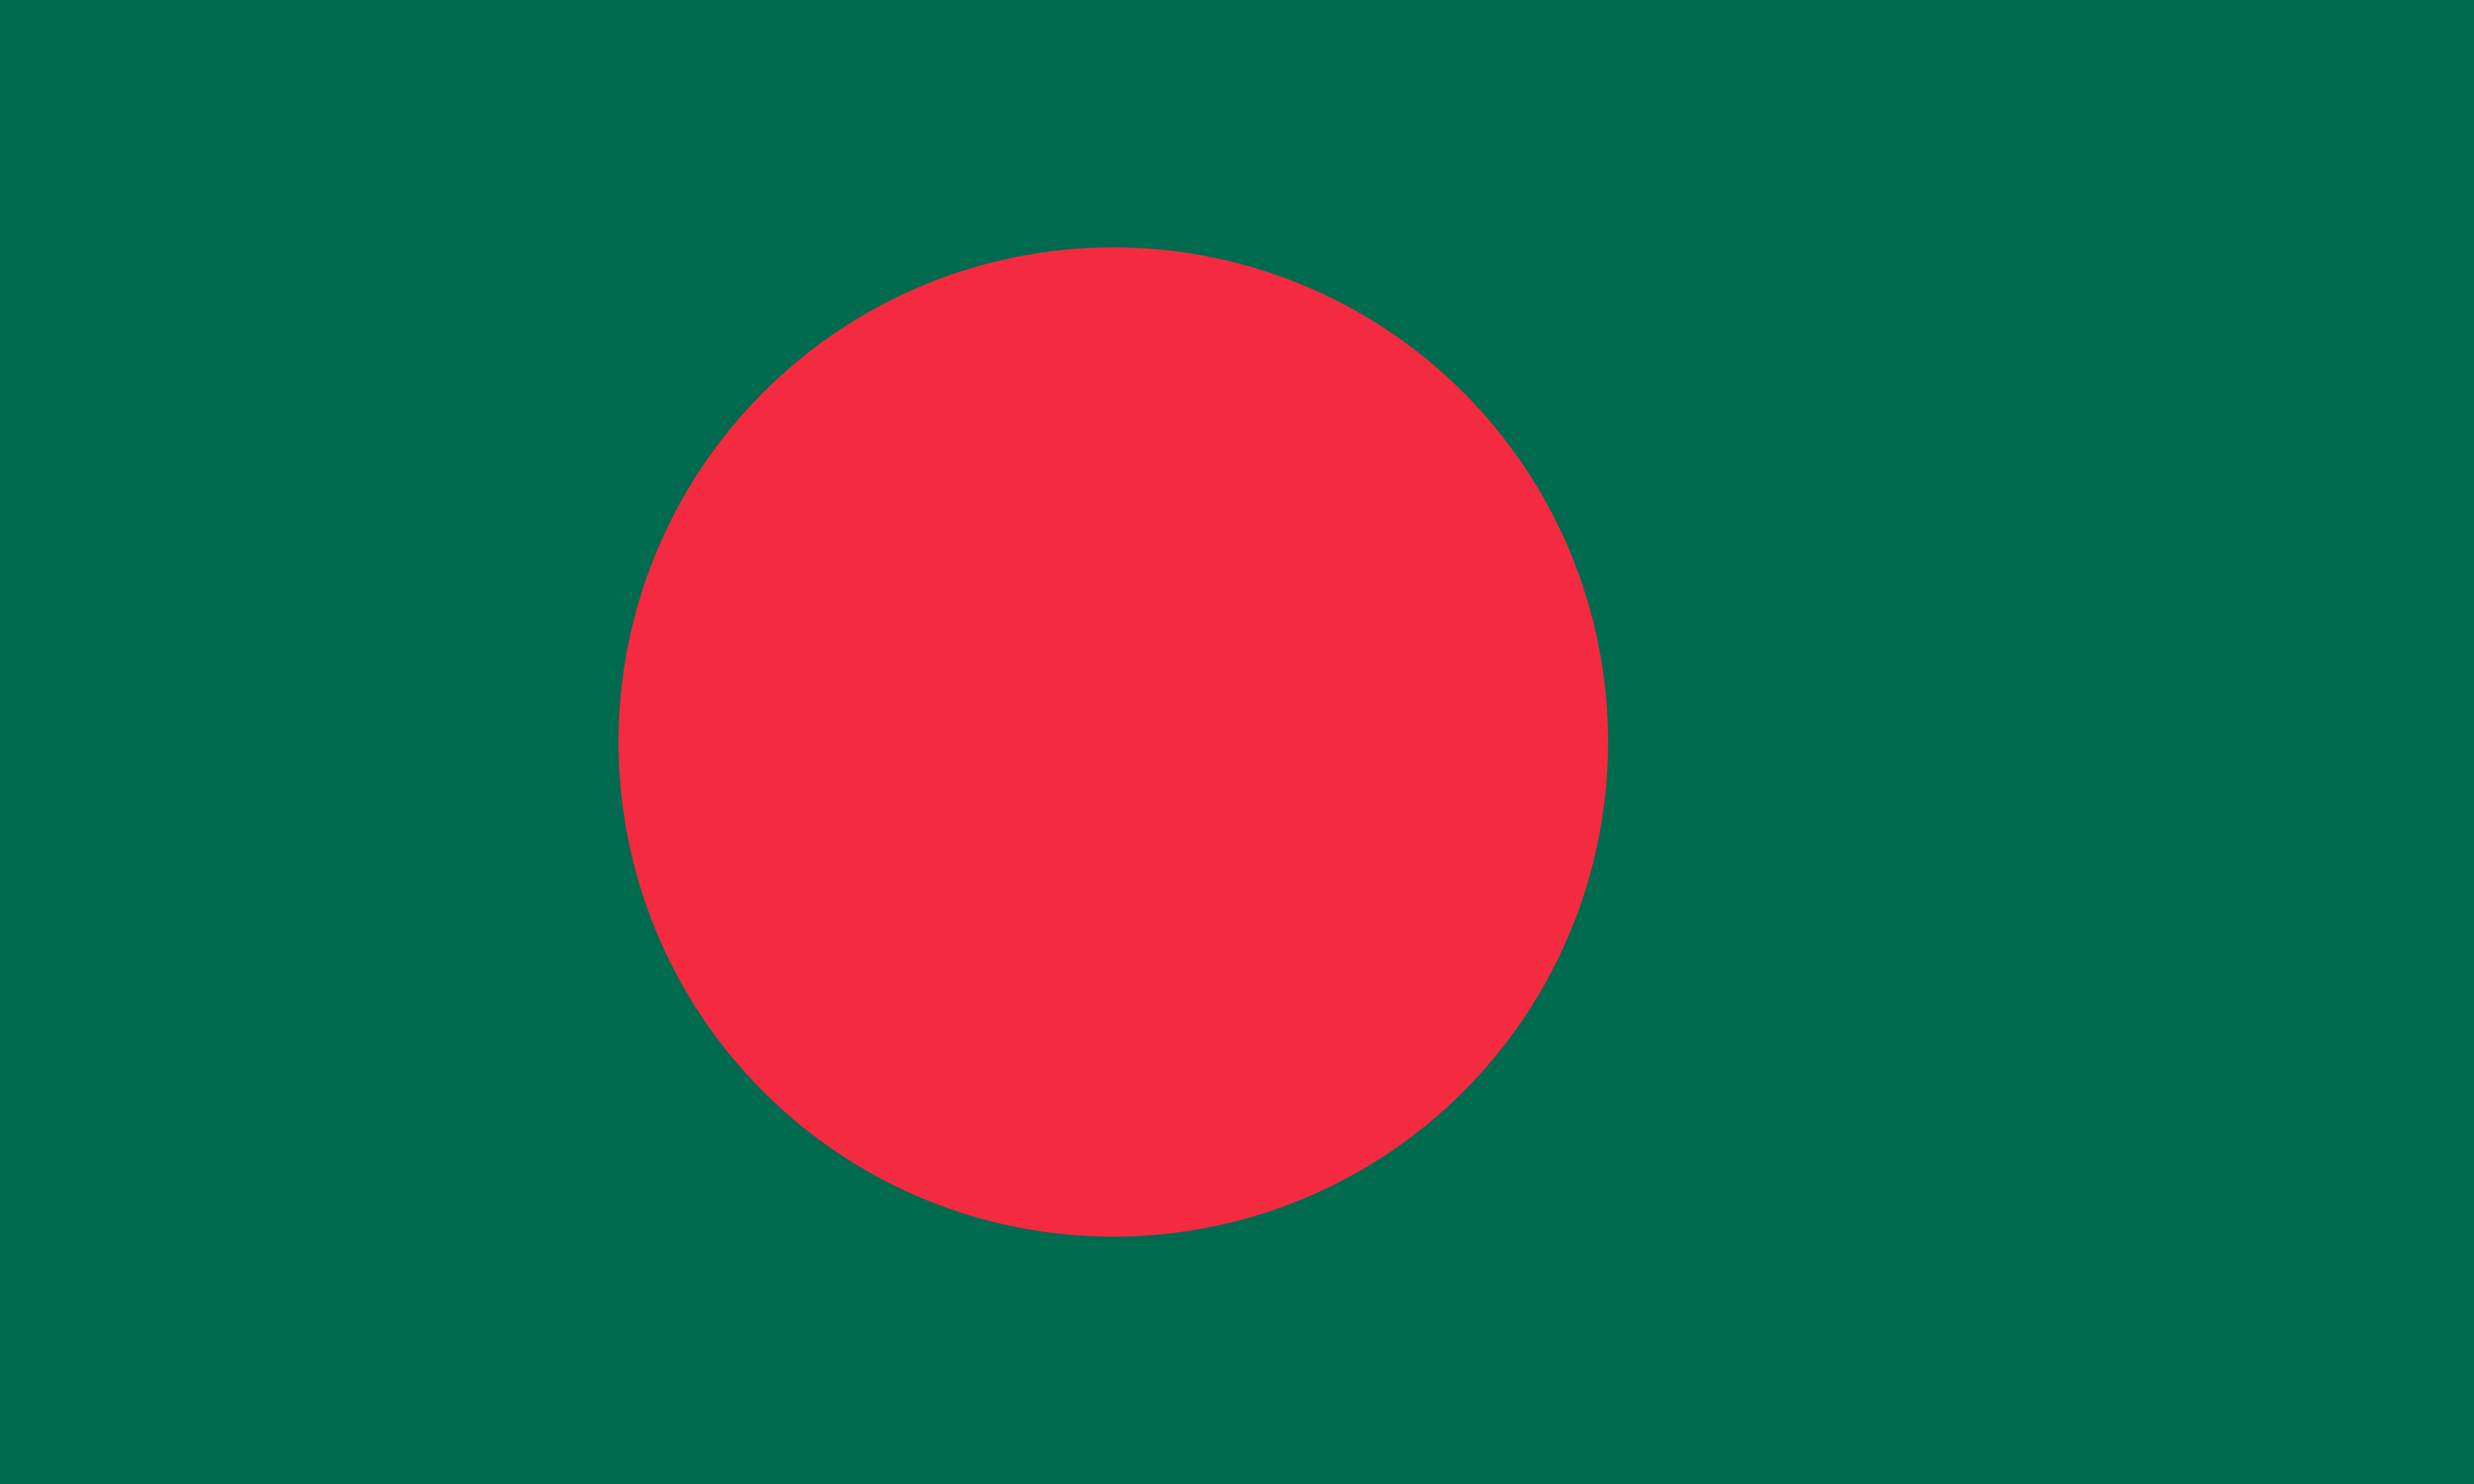 Bangladesh Flag Vector - Free Download